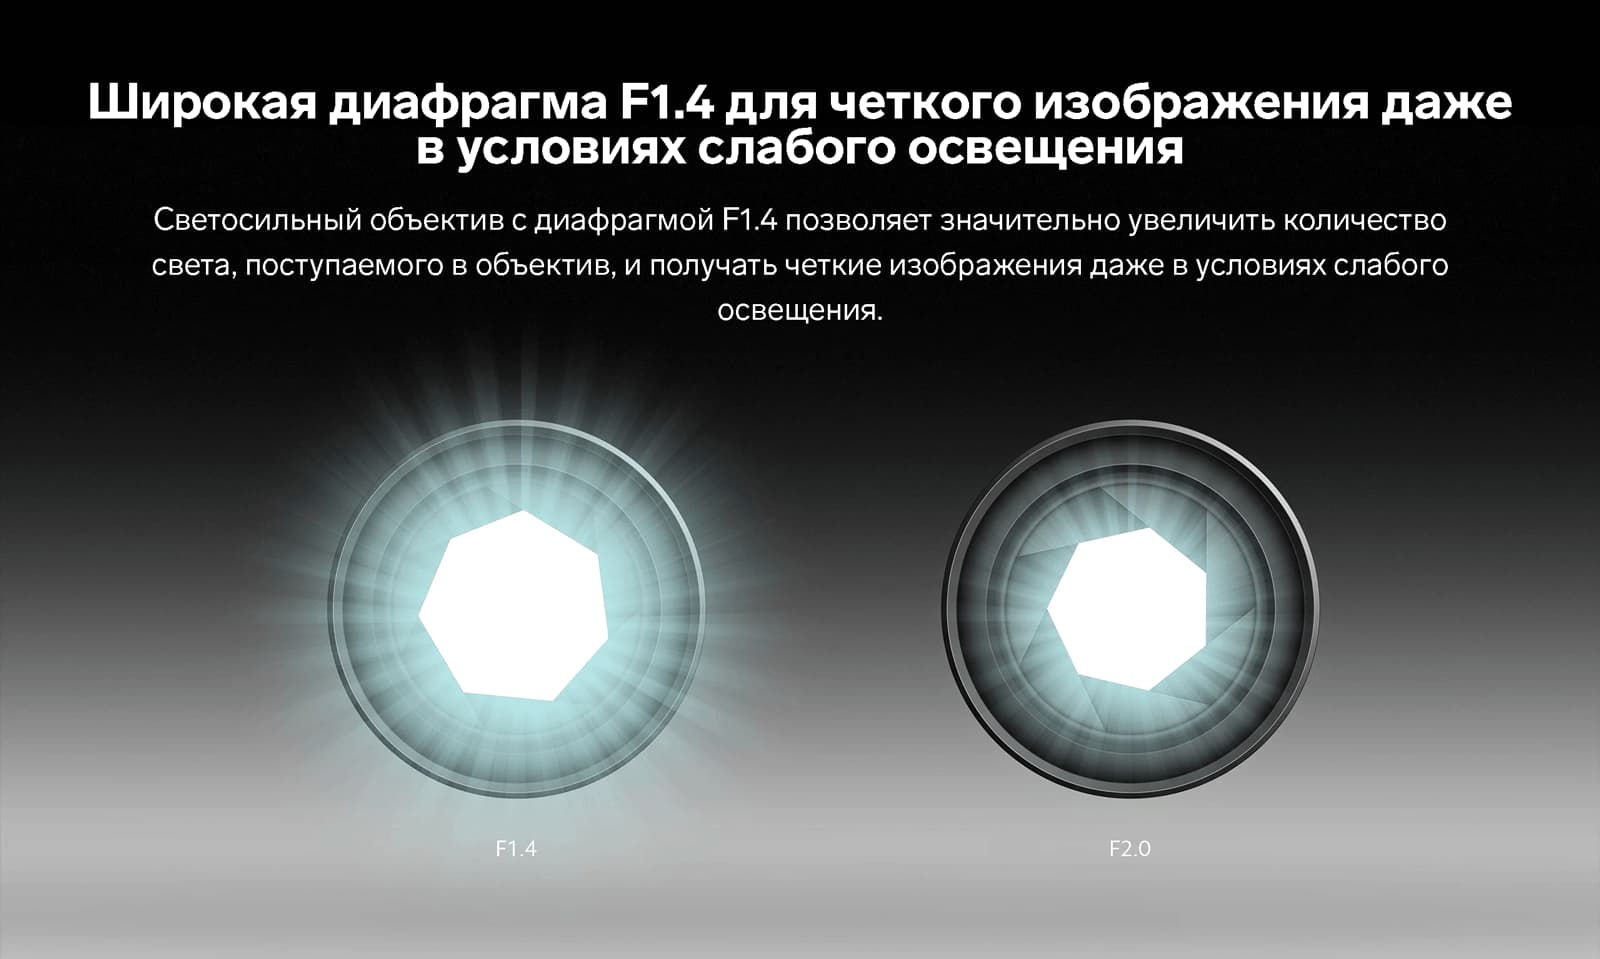 Широкая диафрагма F1.4 для четкого изображения даже в условиях слабого освещения